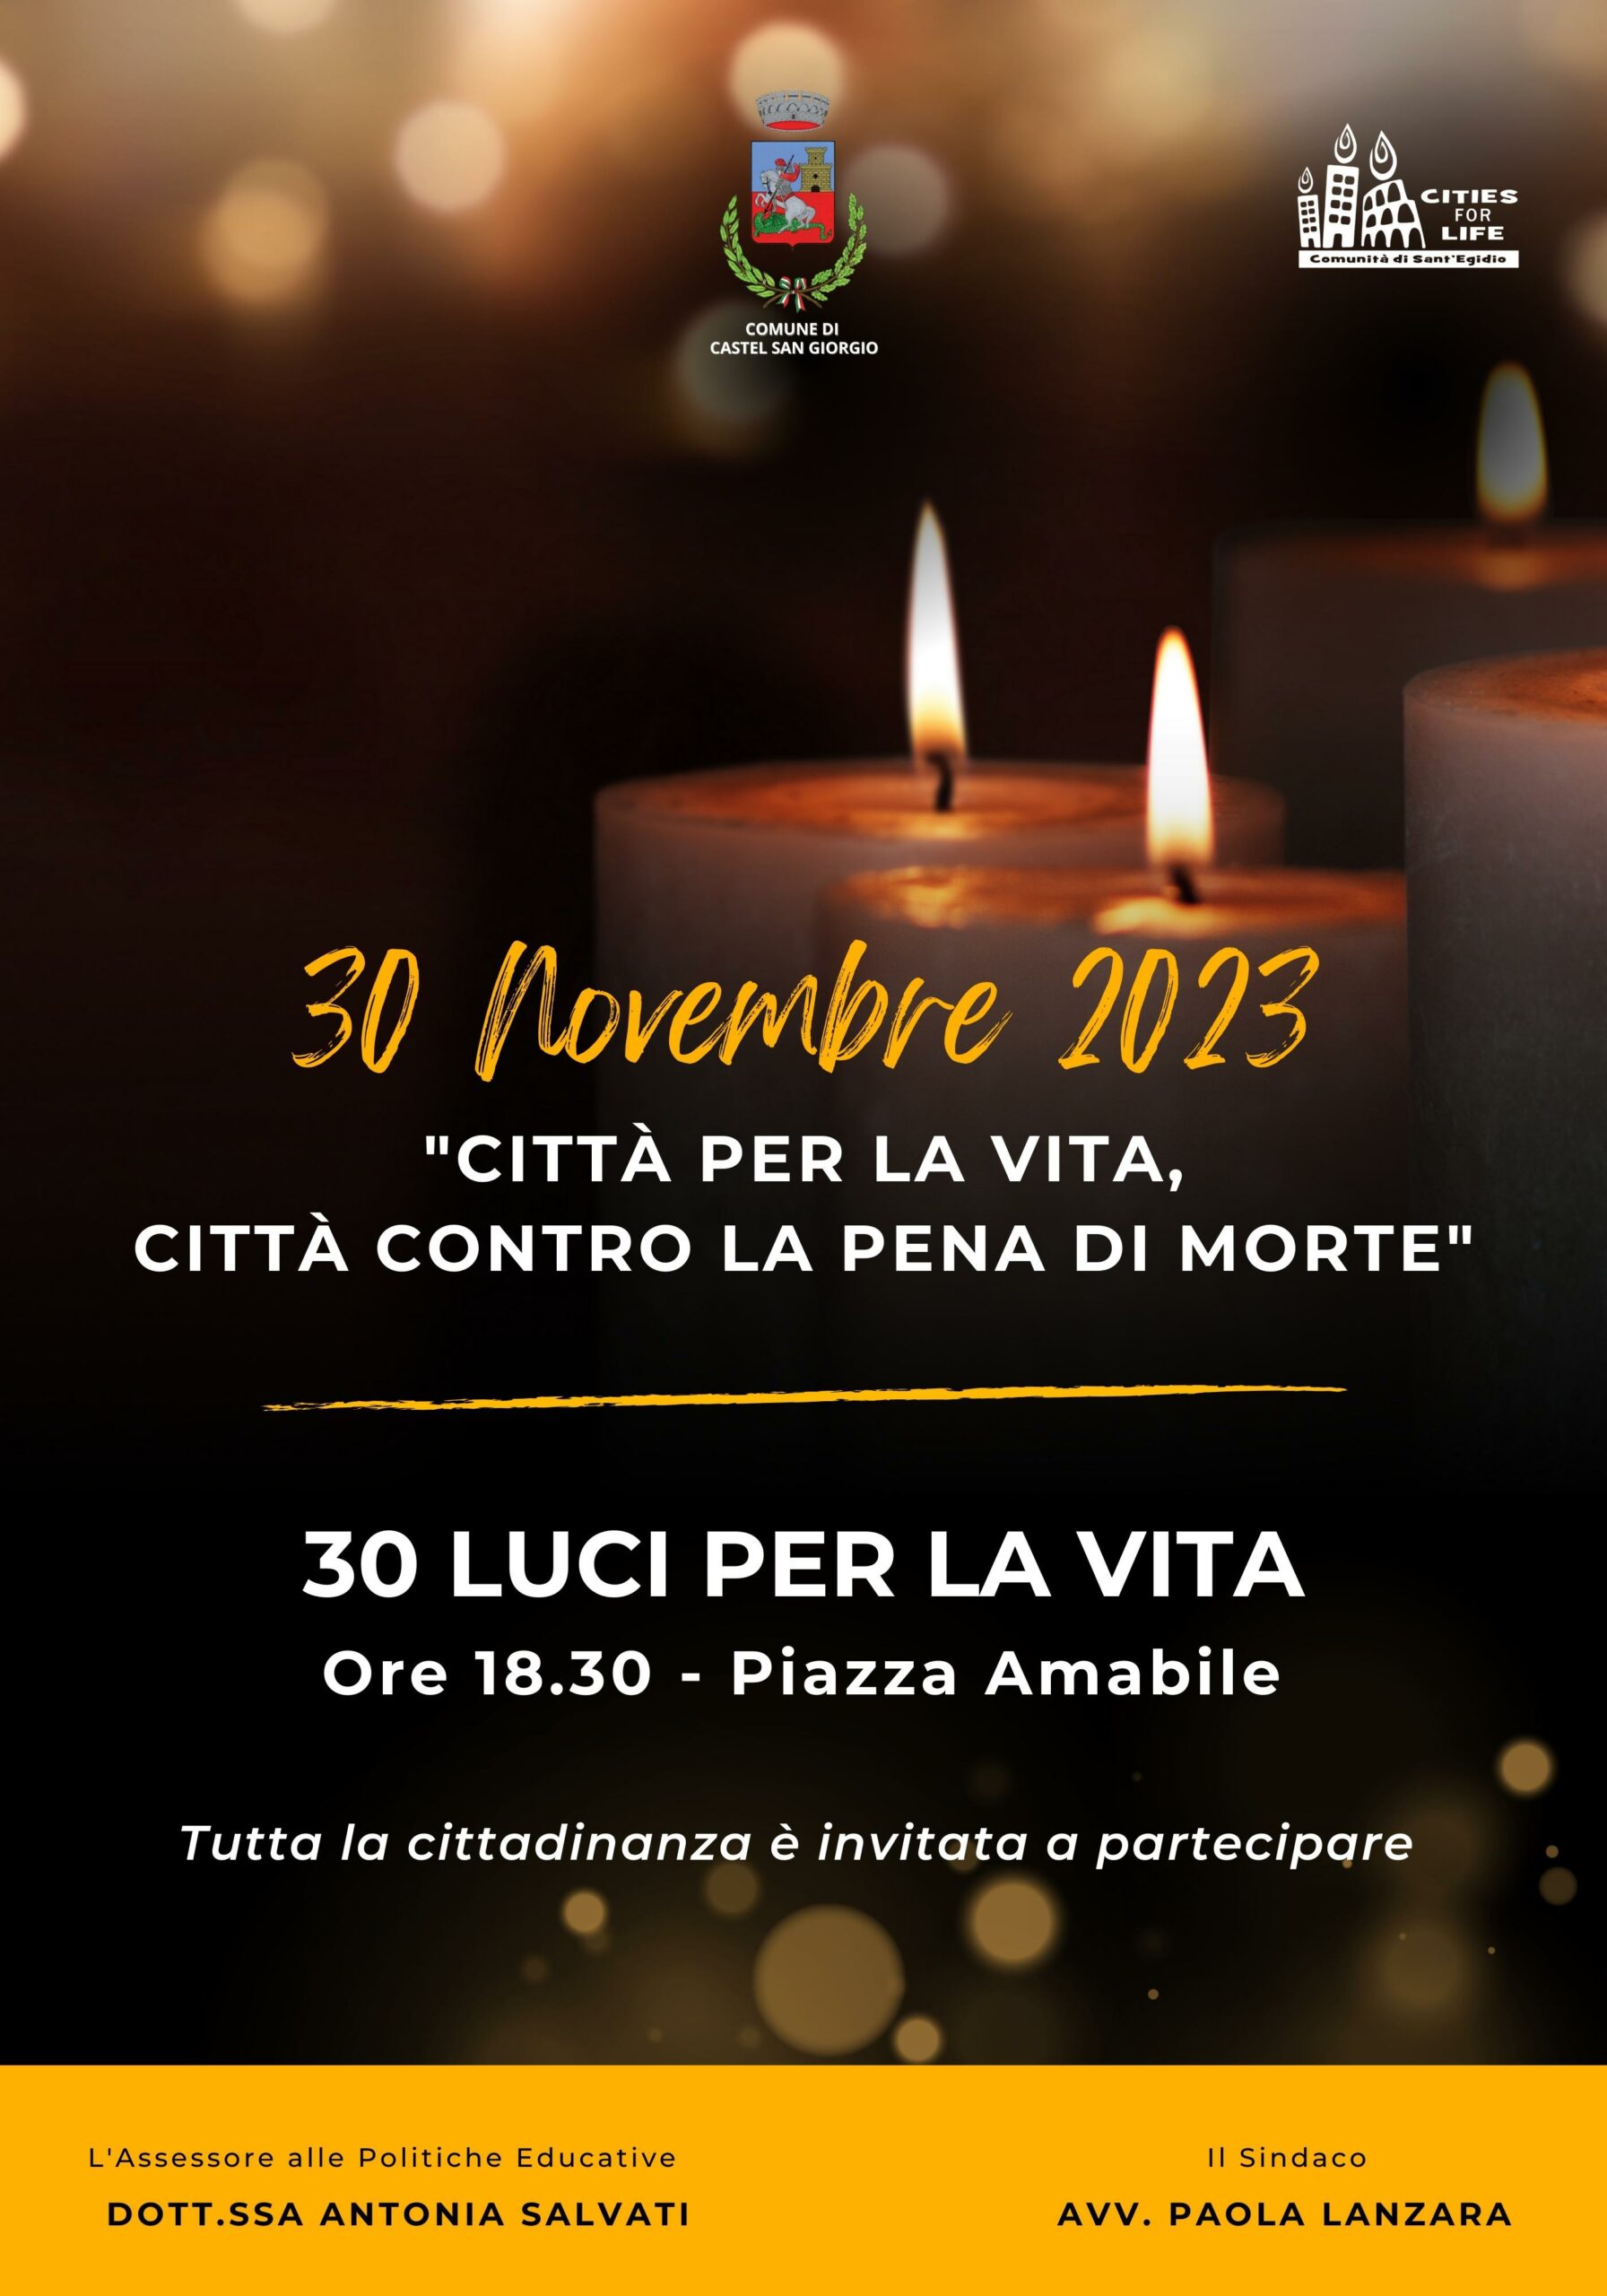 Castel San Giorgio: “30 Luci per la Vita”, Comune in Rete contro pena di morte 